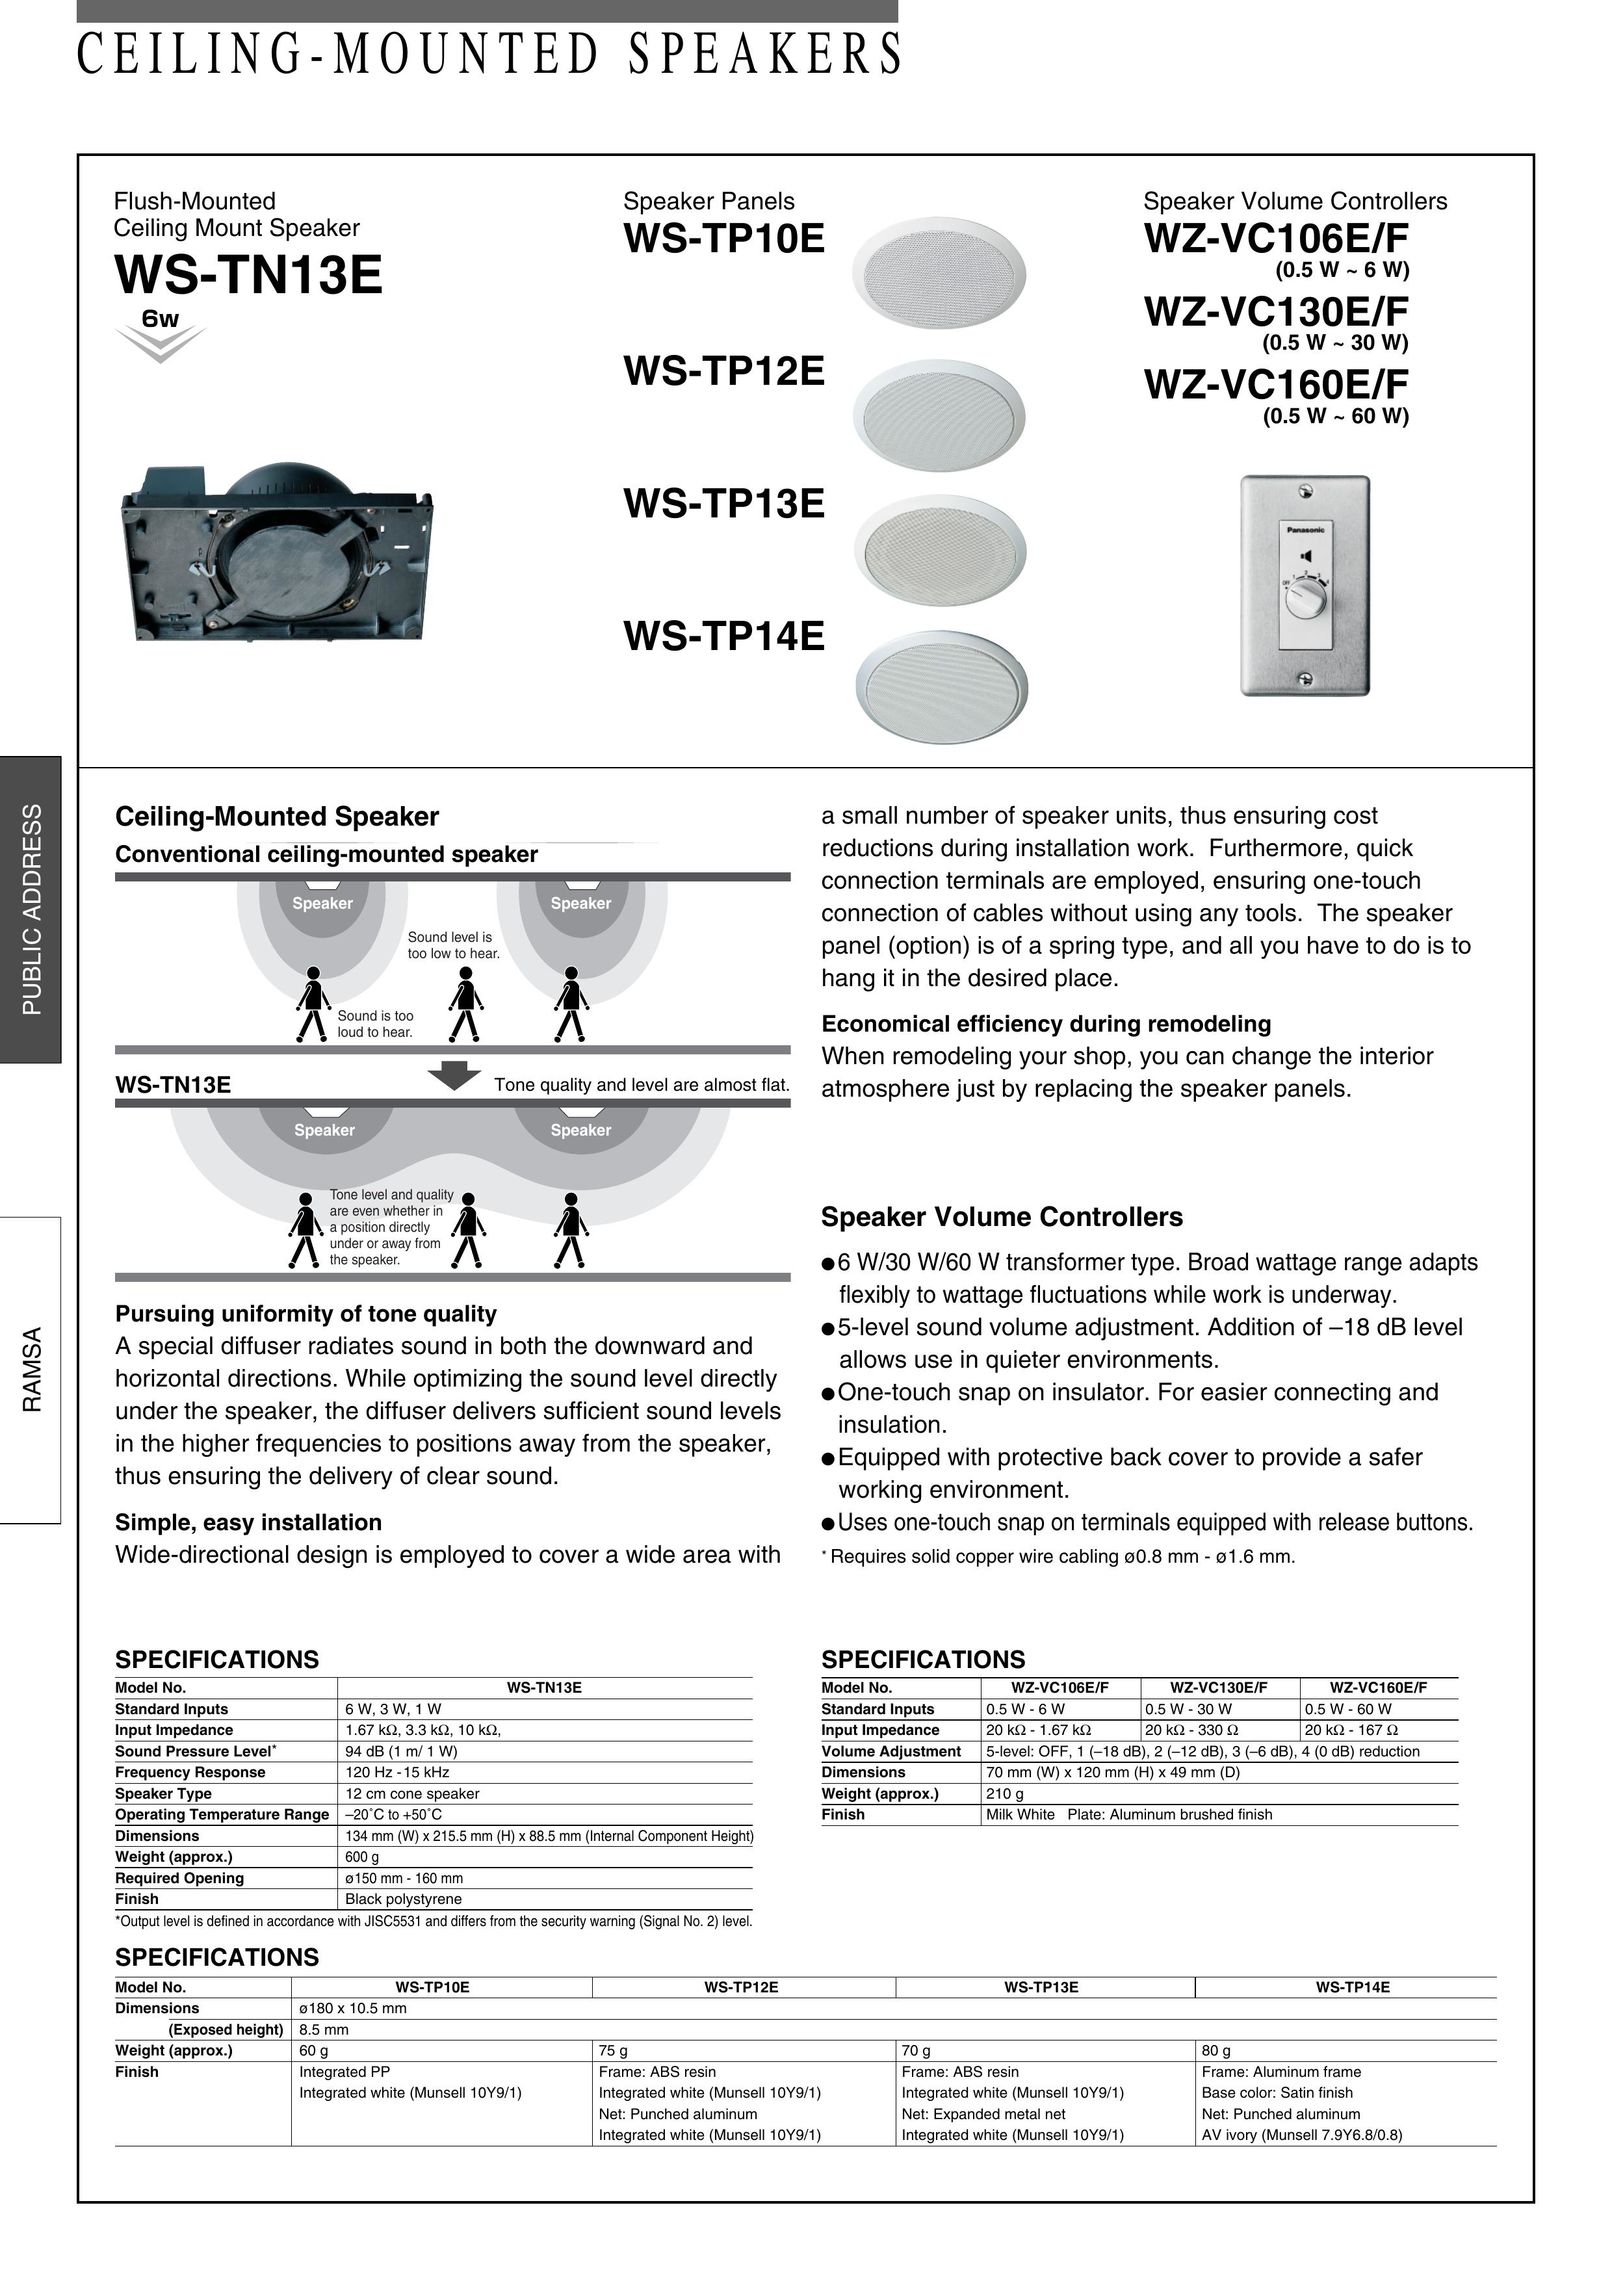 Panasonic WZ-VC130E/F Speaker User Manual